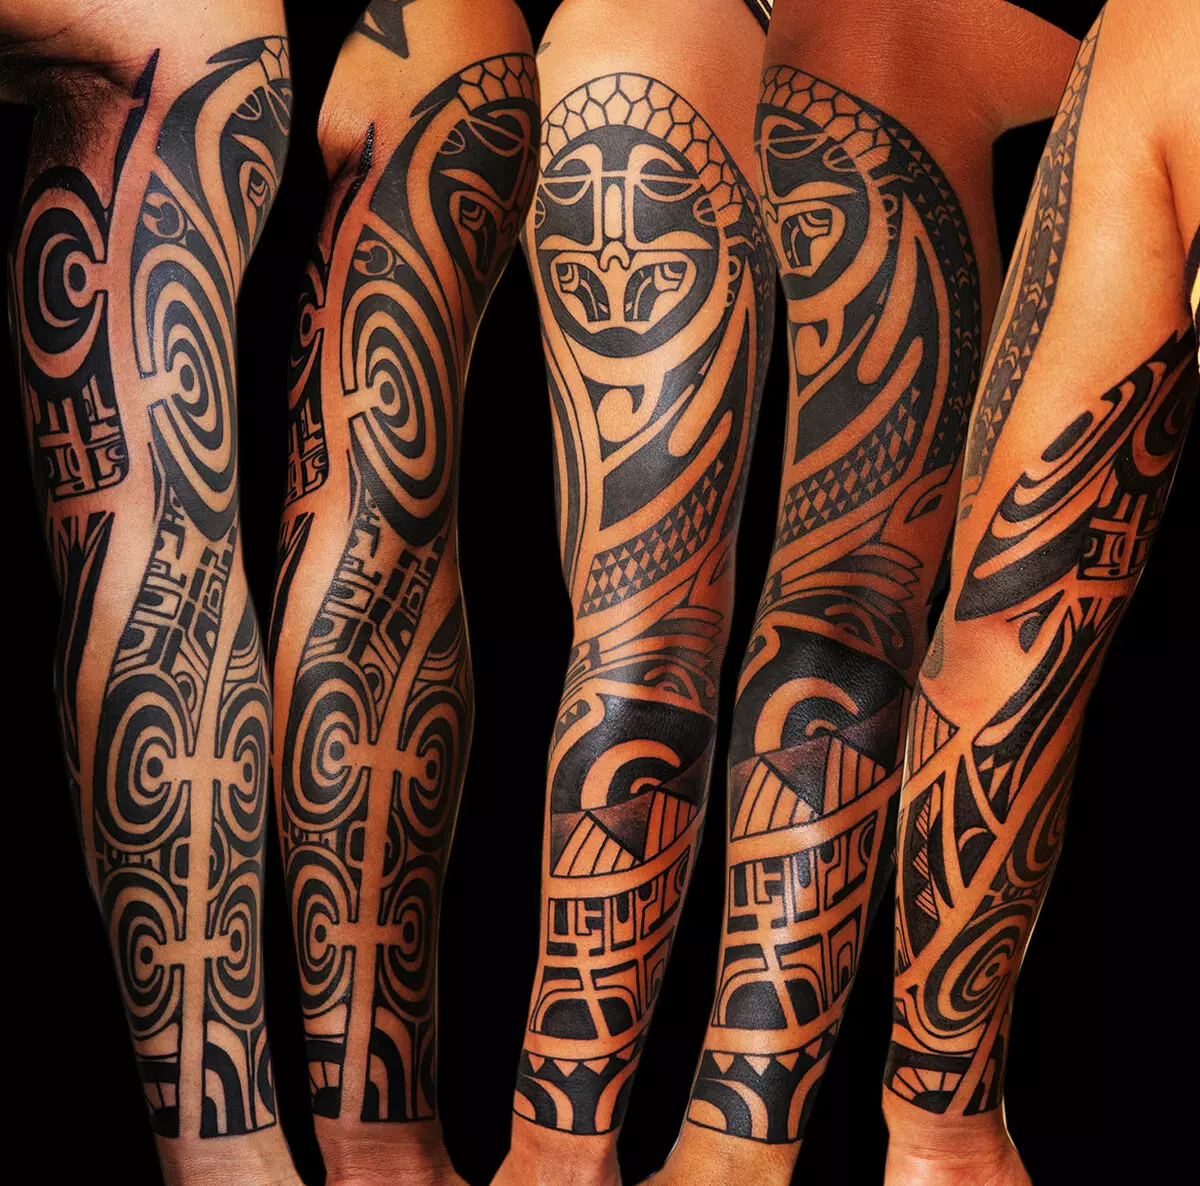 Maya tattoo: makate emateti mune chimiro chevaIndia emadzinza. Zvinoreva. Karenda, mapatani uye mamwe mimwe mifananidzo 14013_12